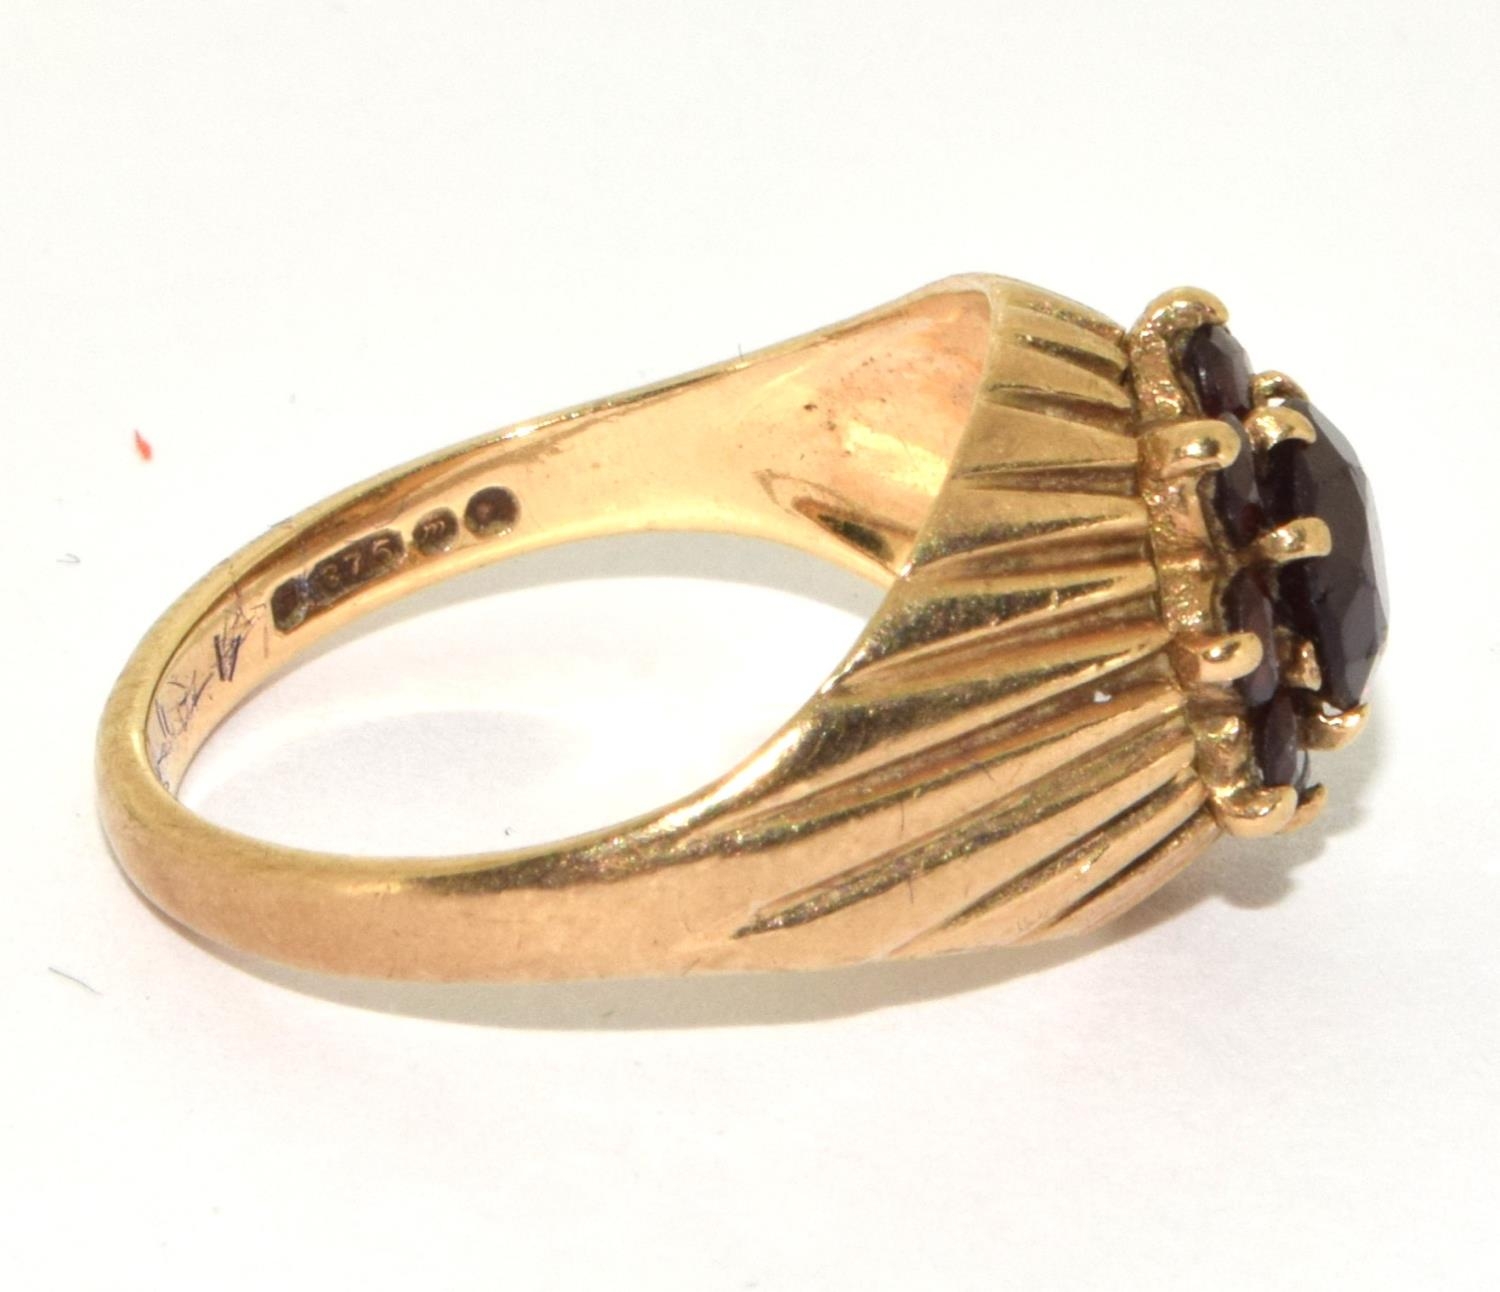 9ct gold large set garnet ring 3.3g size M - Image 4 of 5